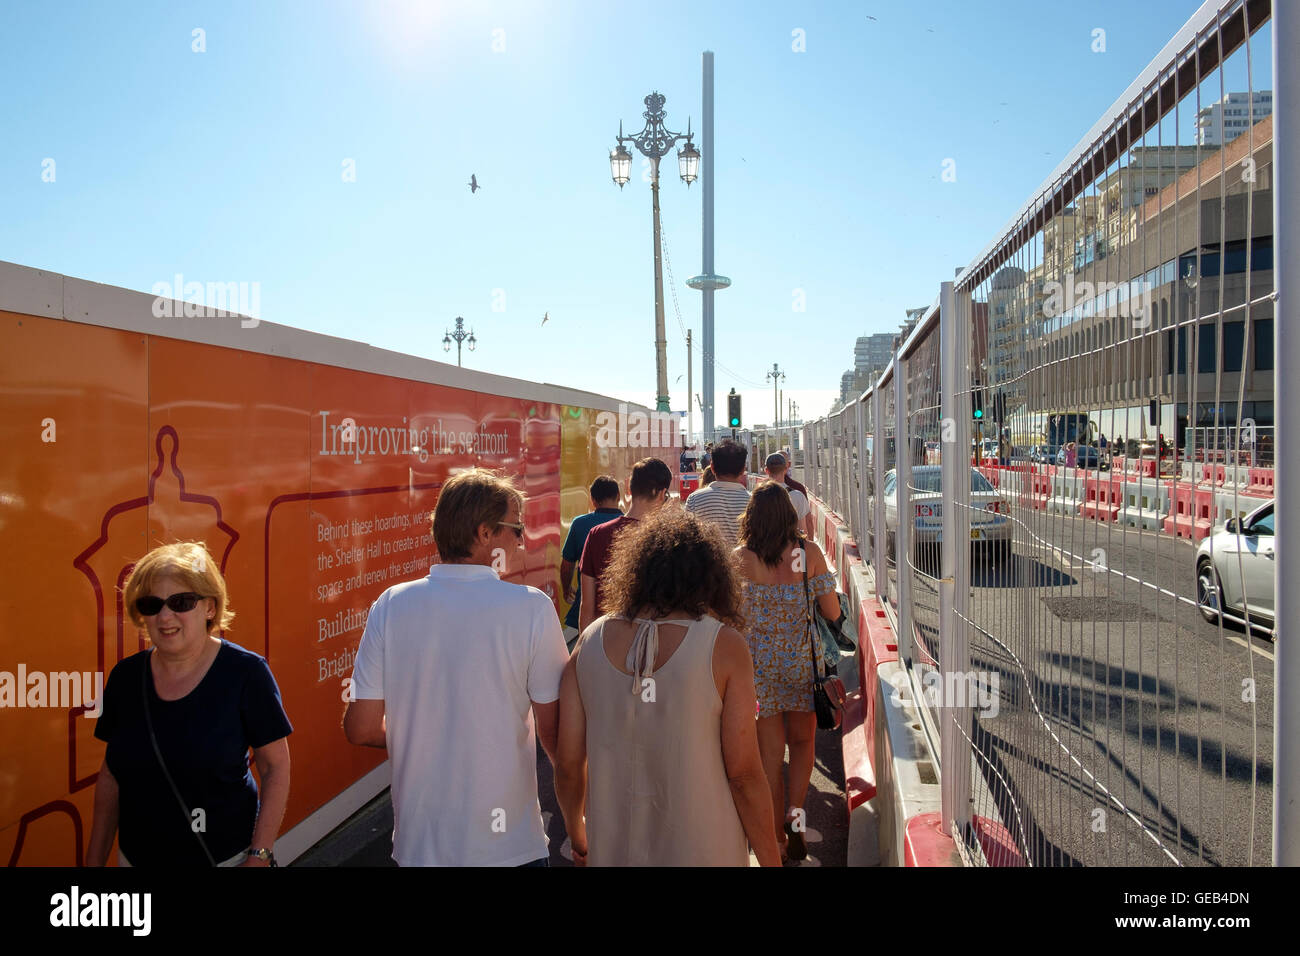 Brighton, UK - 23. Juli 2016: Scharen von Besuchern zu quetschen, zwischen Werbetafeln auf Brighton Seafront und Straßenbau errichtet Stockfoto